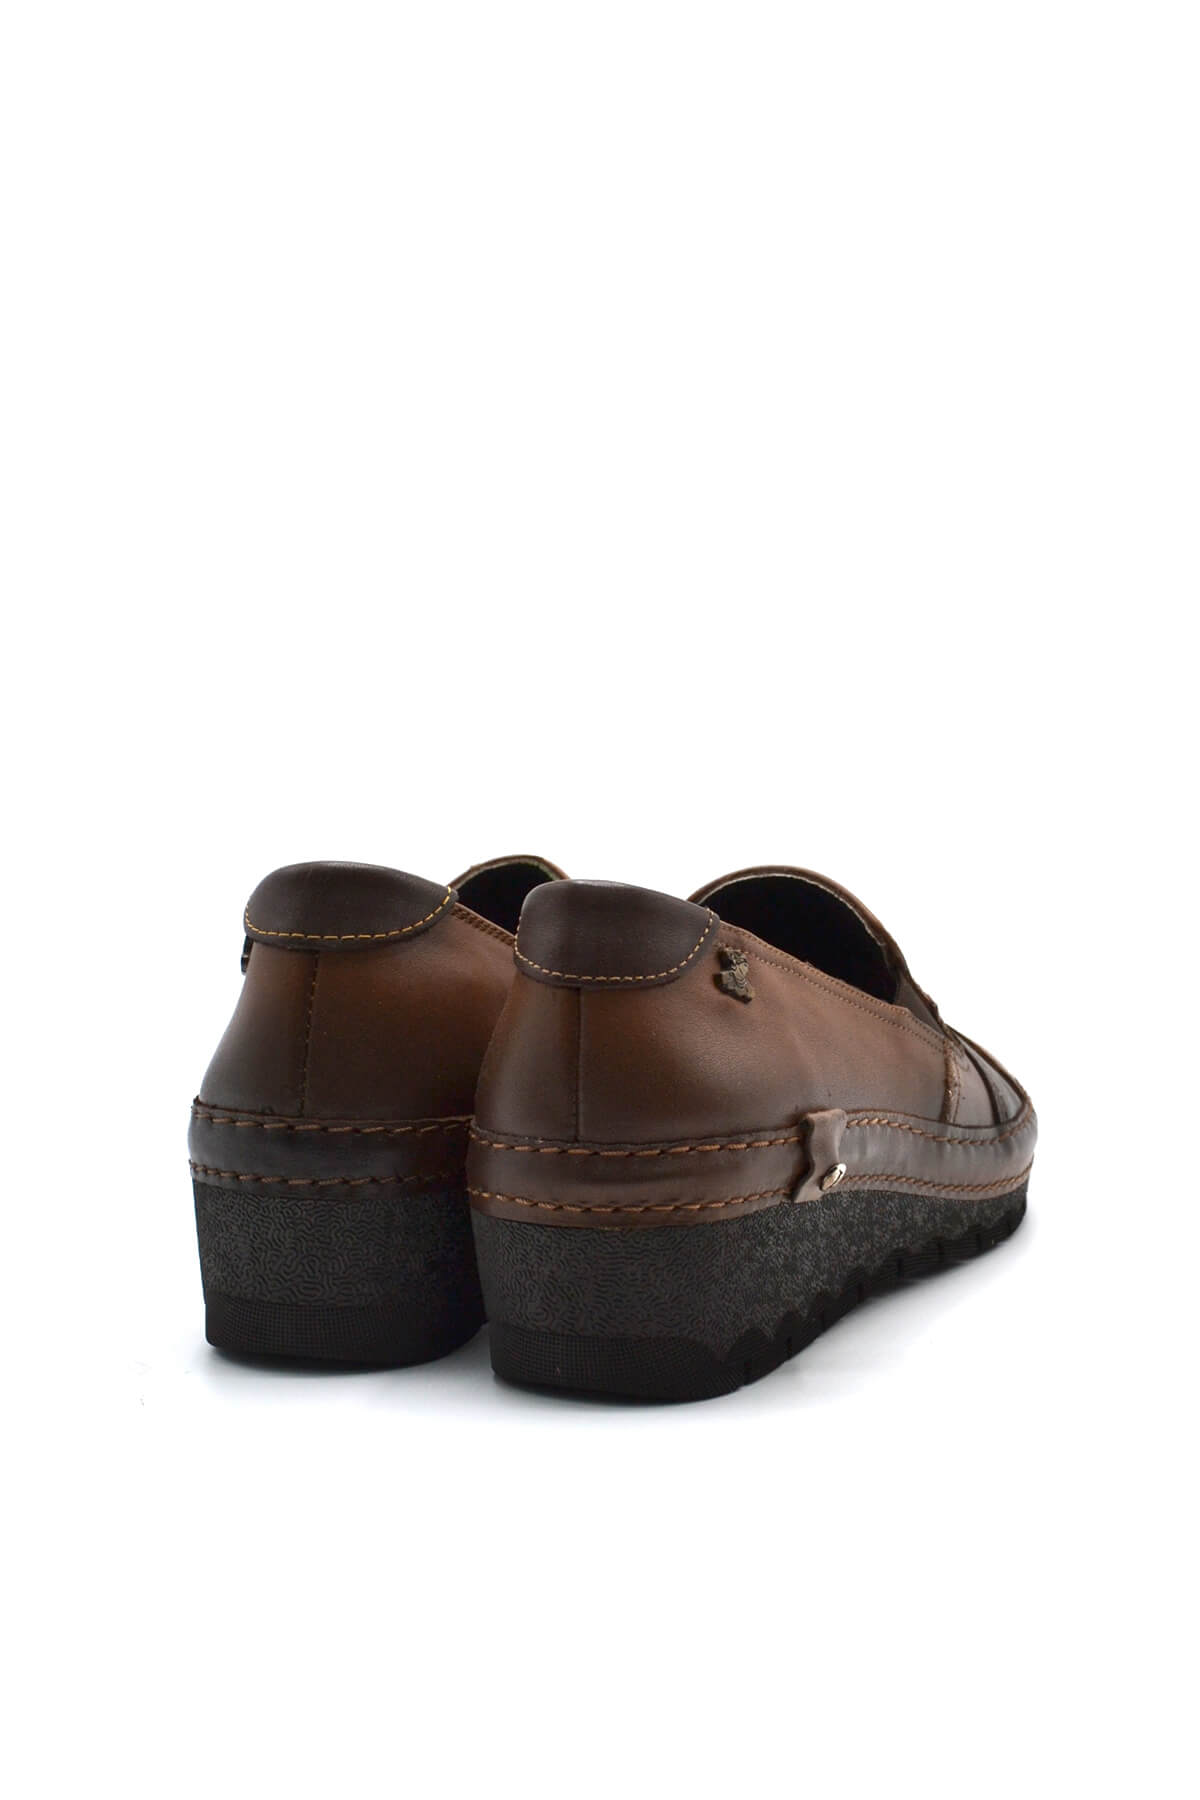 Kadın Comfort Deri Ayakkabı Taba 2213507K - Thumbnail